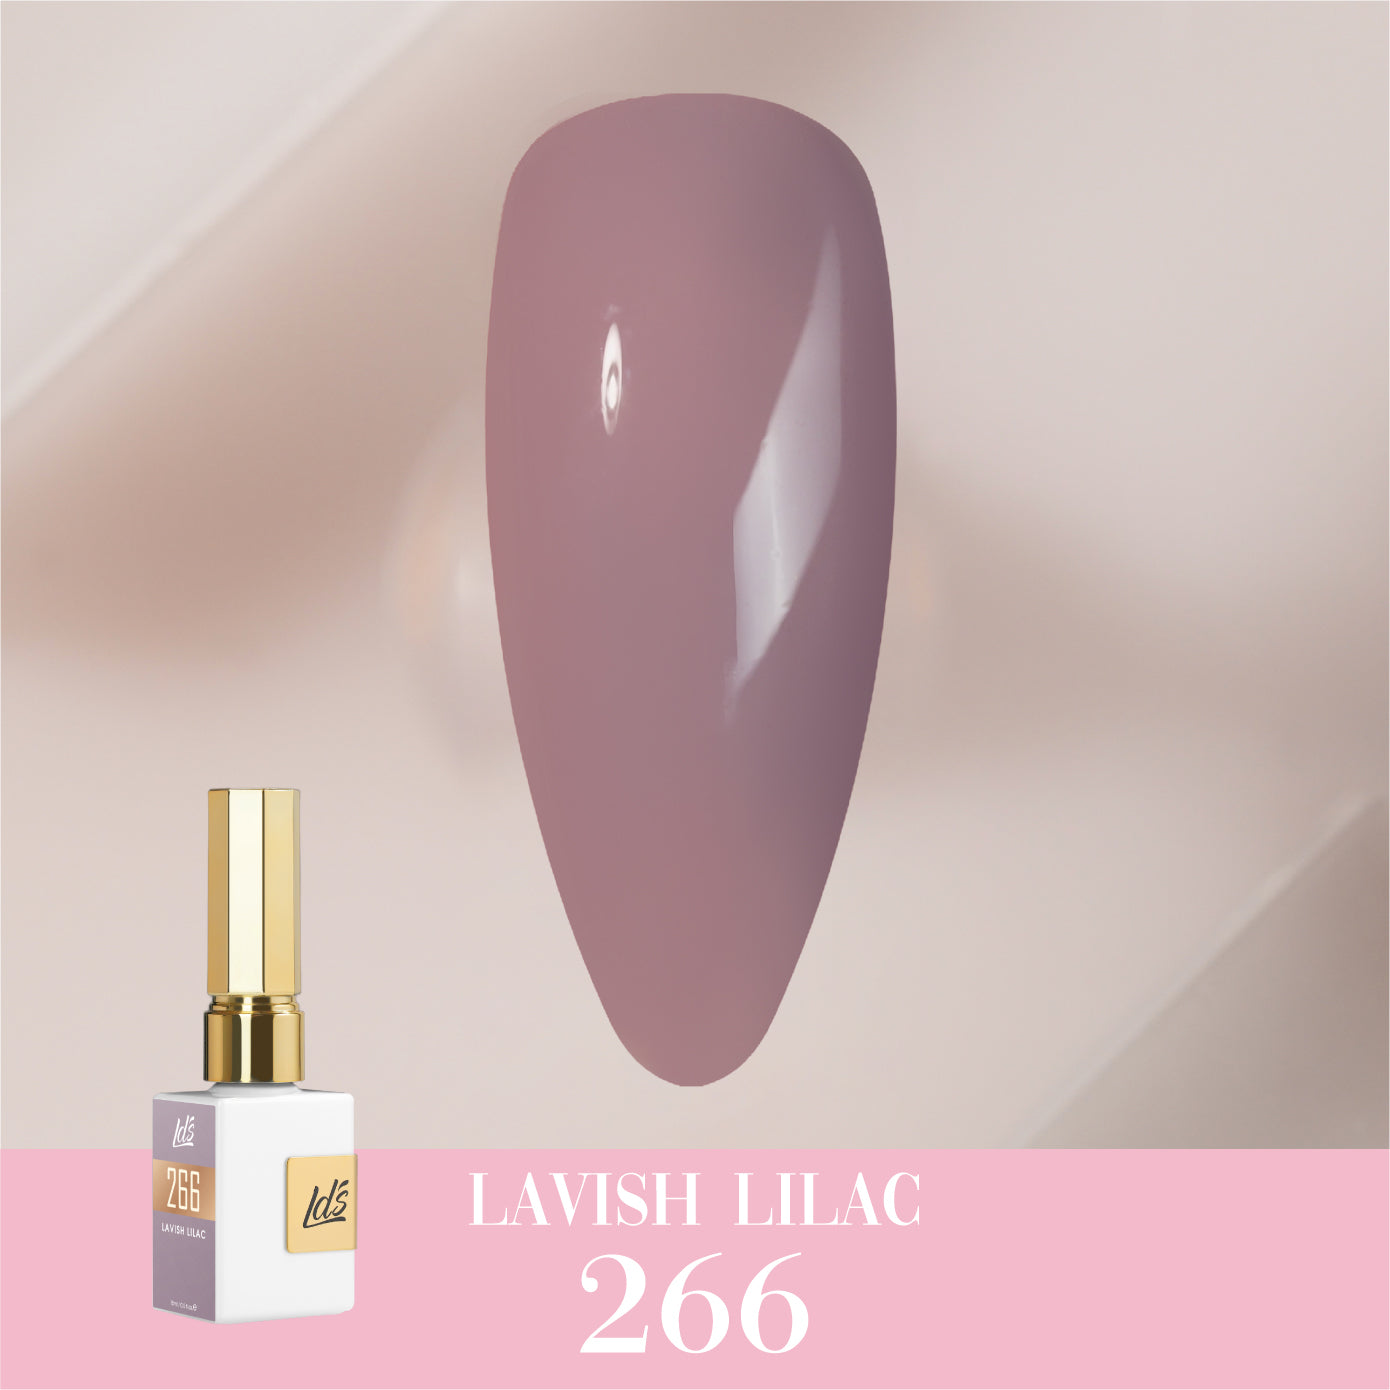 LDS Color Craze Collection - 266 Lavish Lilac - Gel Polish 0.5oz